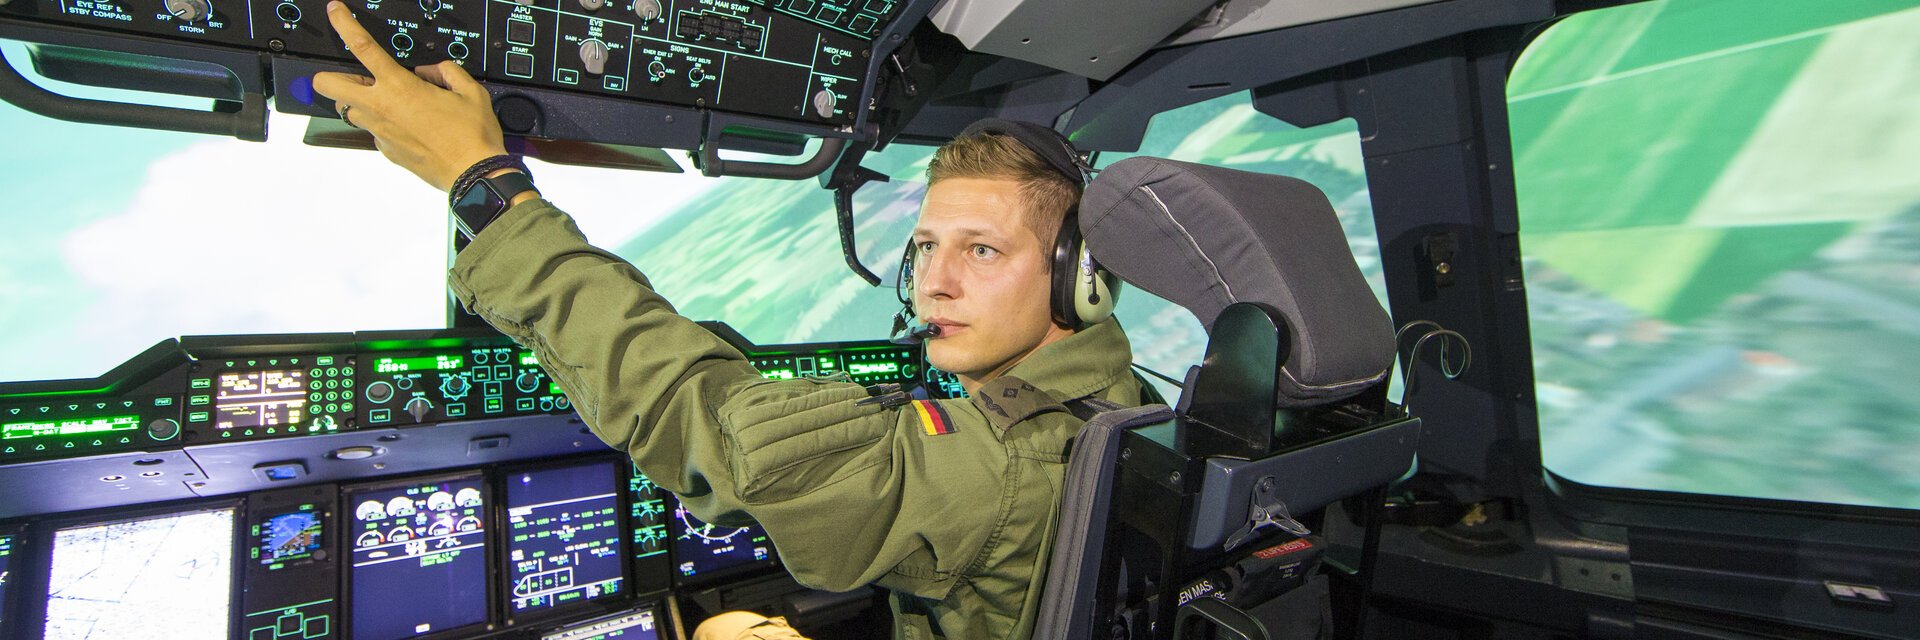 Pilot in Uniform sitzt im Cockpit und Ã¼berprÃ¼ft diverse Schalter